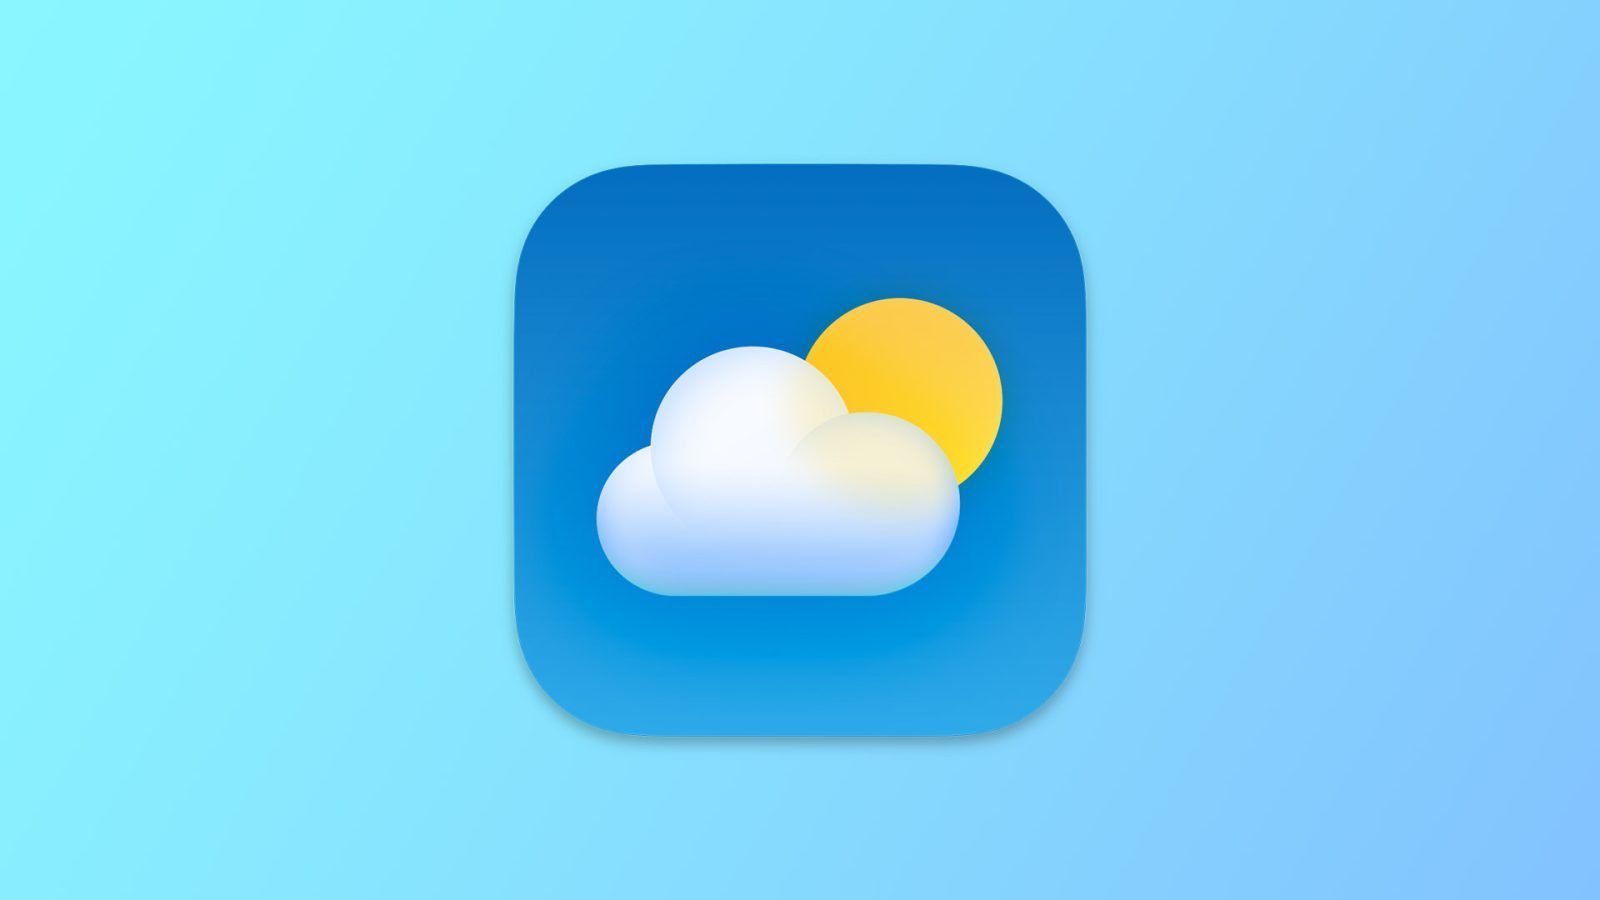 Виджет погоды на iPhone вместо снега показывает иконку файла